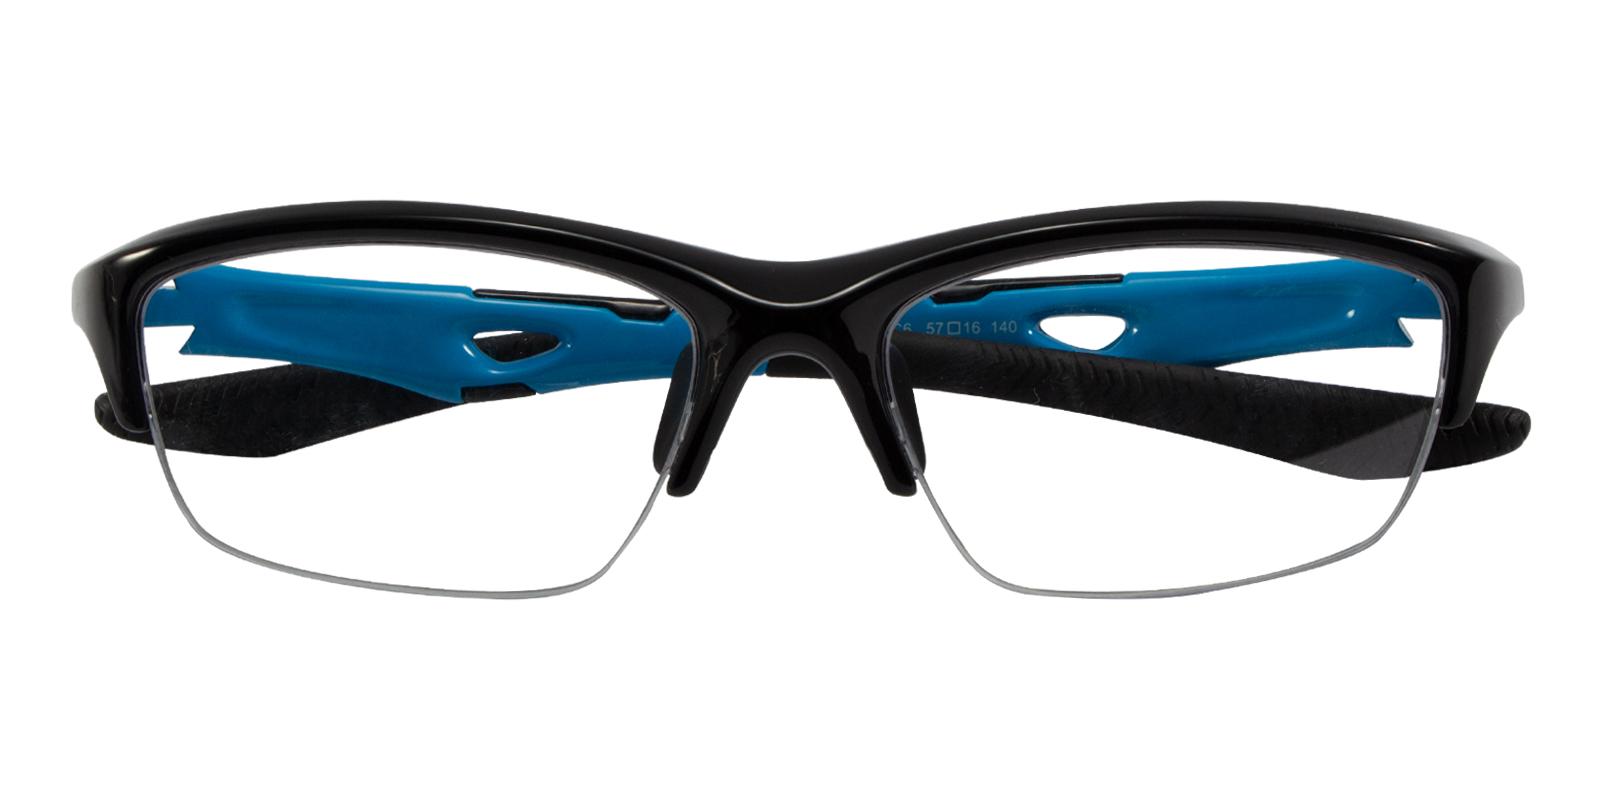 Venera Blue TR NosePads , SportsGlasses Frames from ABBE Glasses